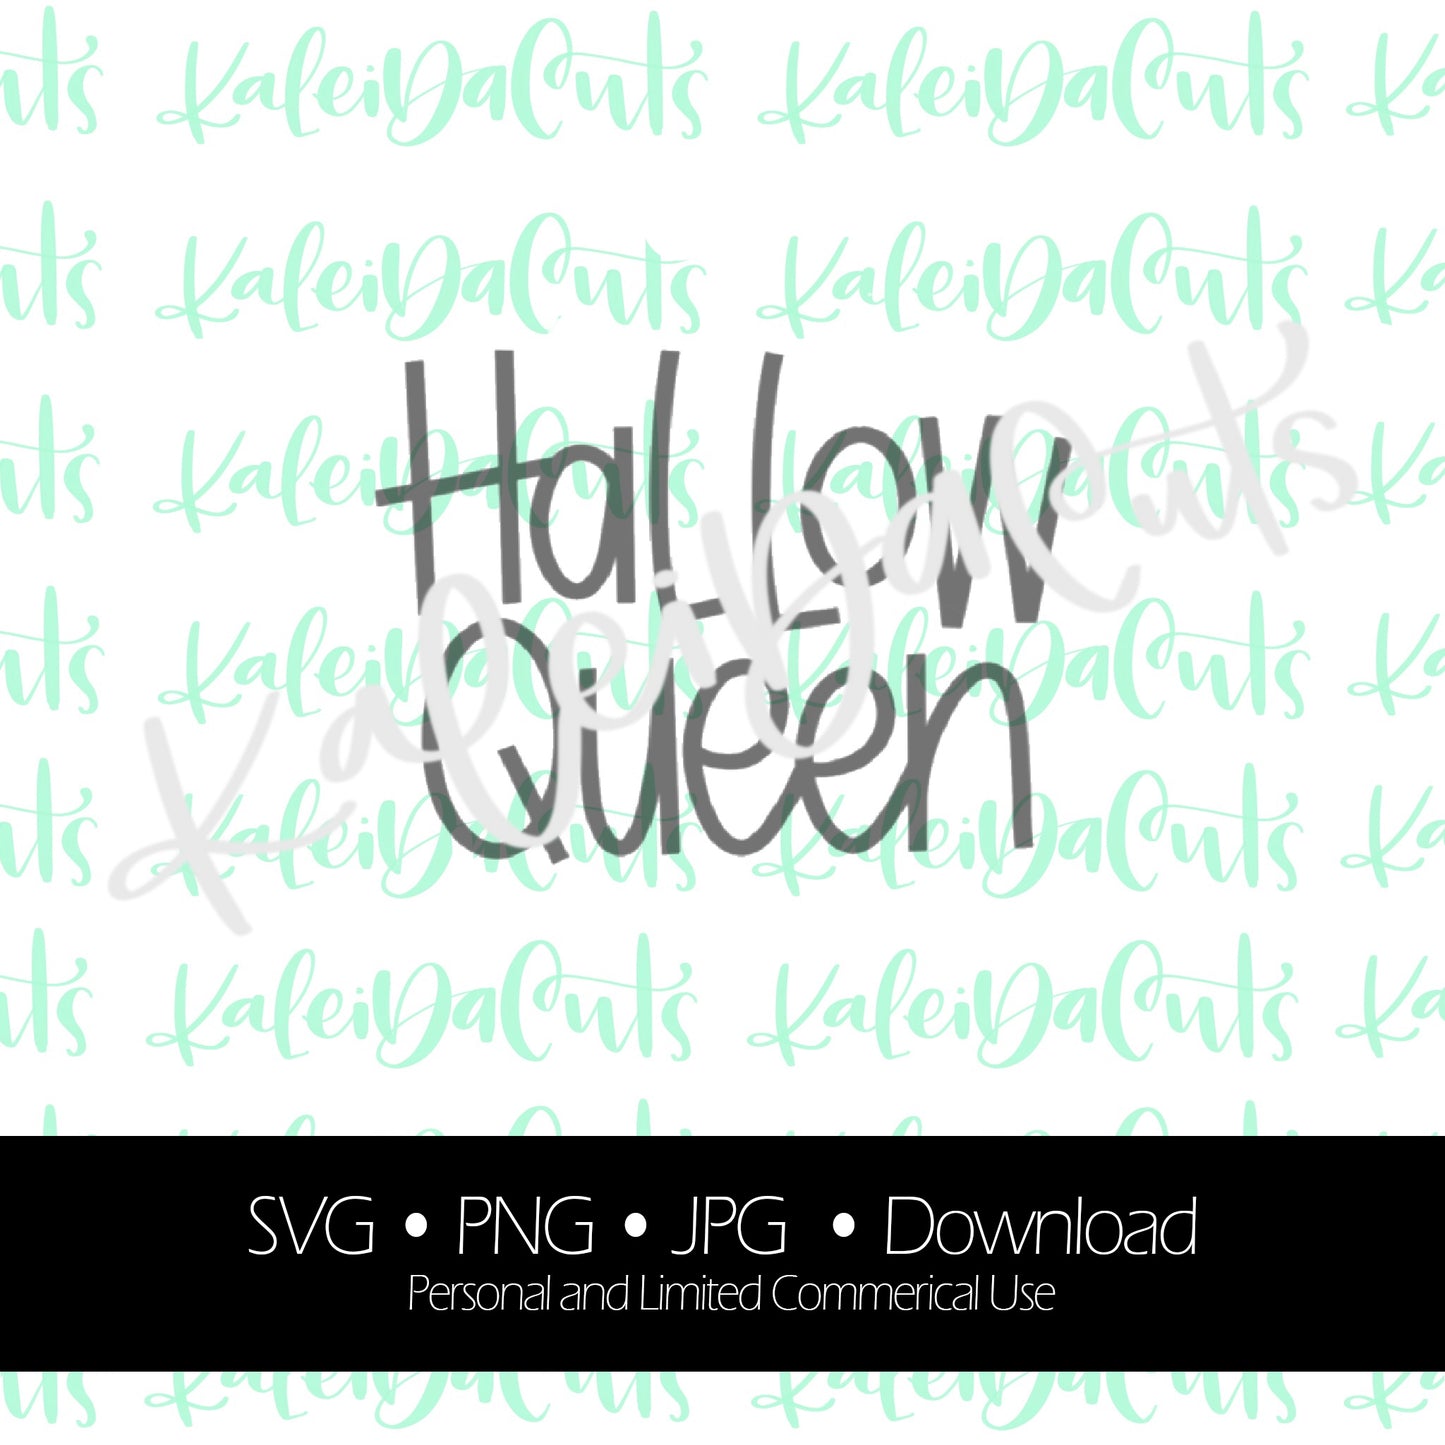 Hallo-Queen Digital Download. SVG.